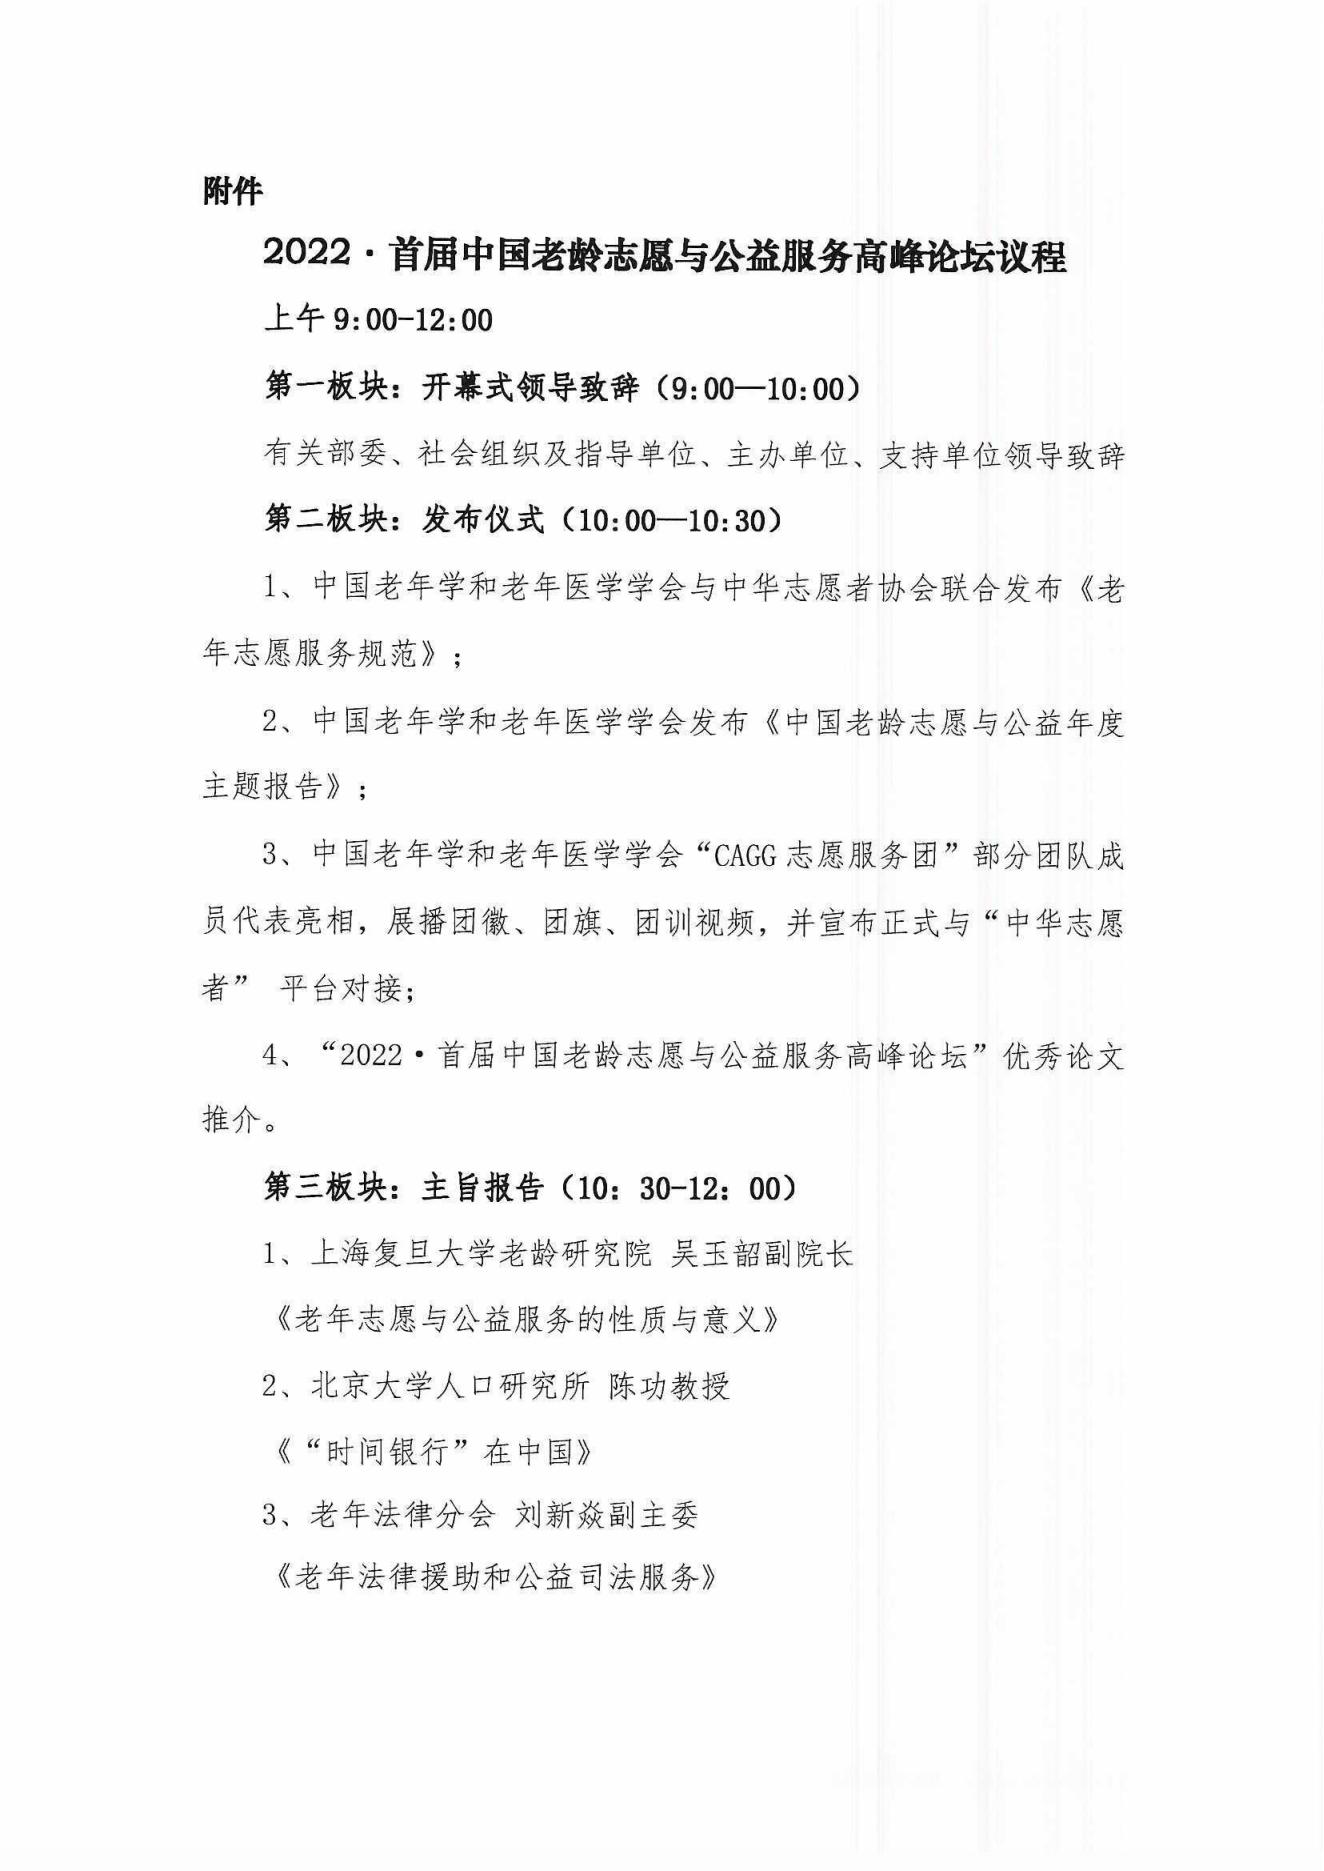 2022首届中国老龄志愿与公益服务高峰论坛首轮通知(1)_03.jpg